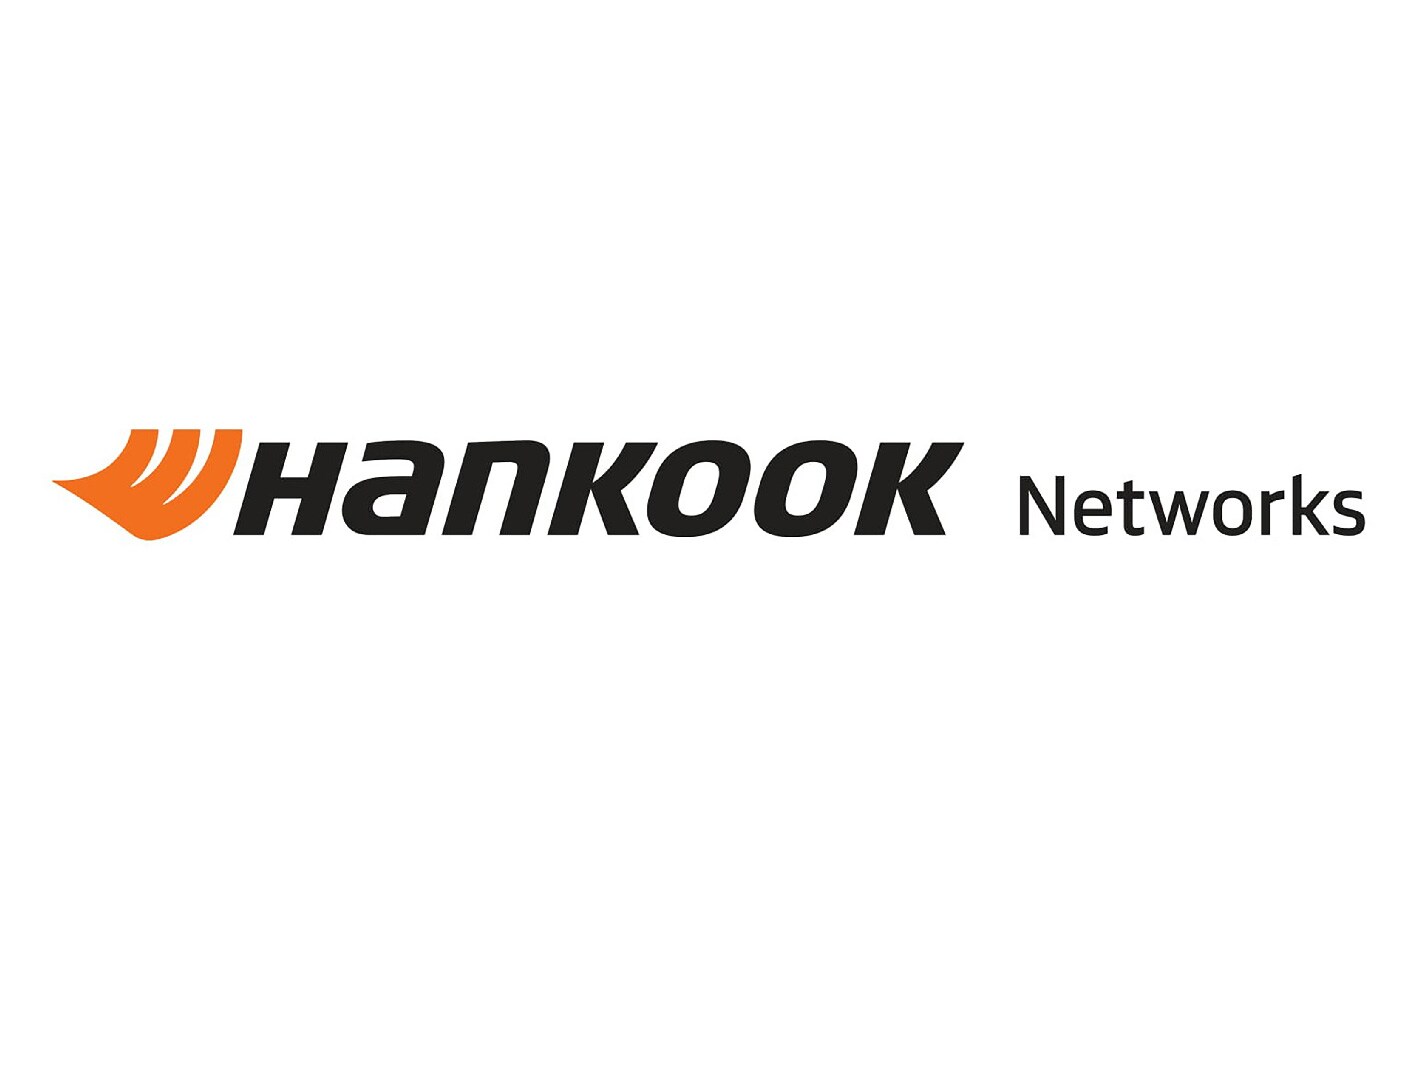 Hankook Networks suministrará soluciones de automatización logística a hy.